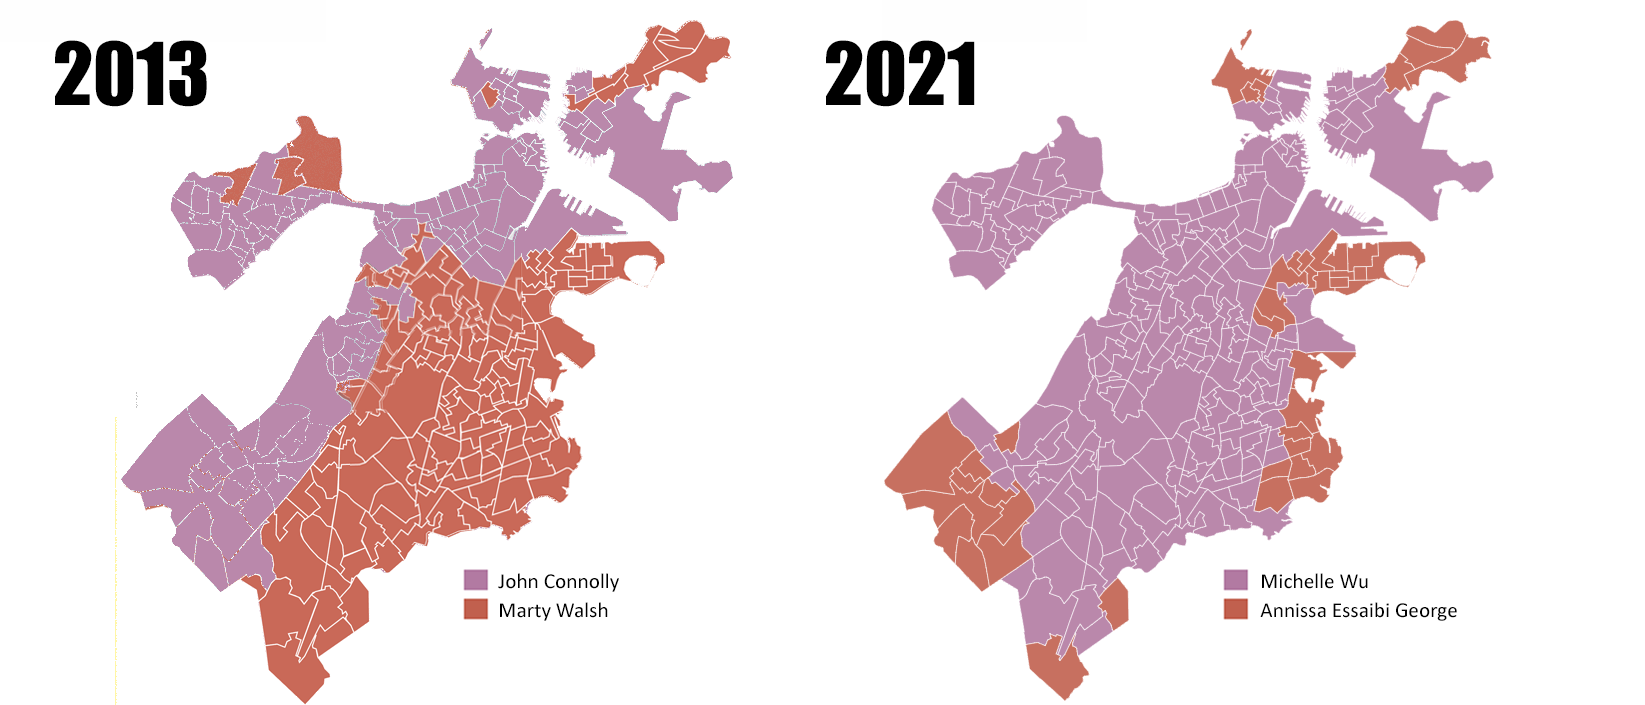 Boston mayoral results, 2013 vs. 2021